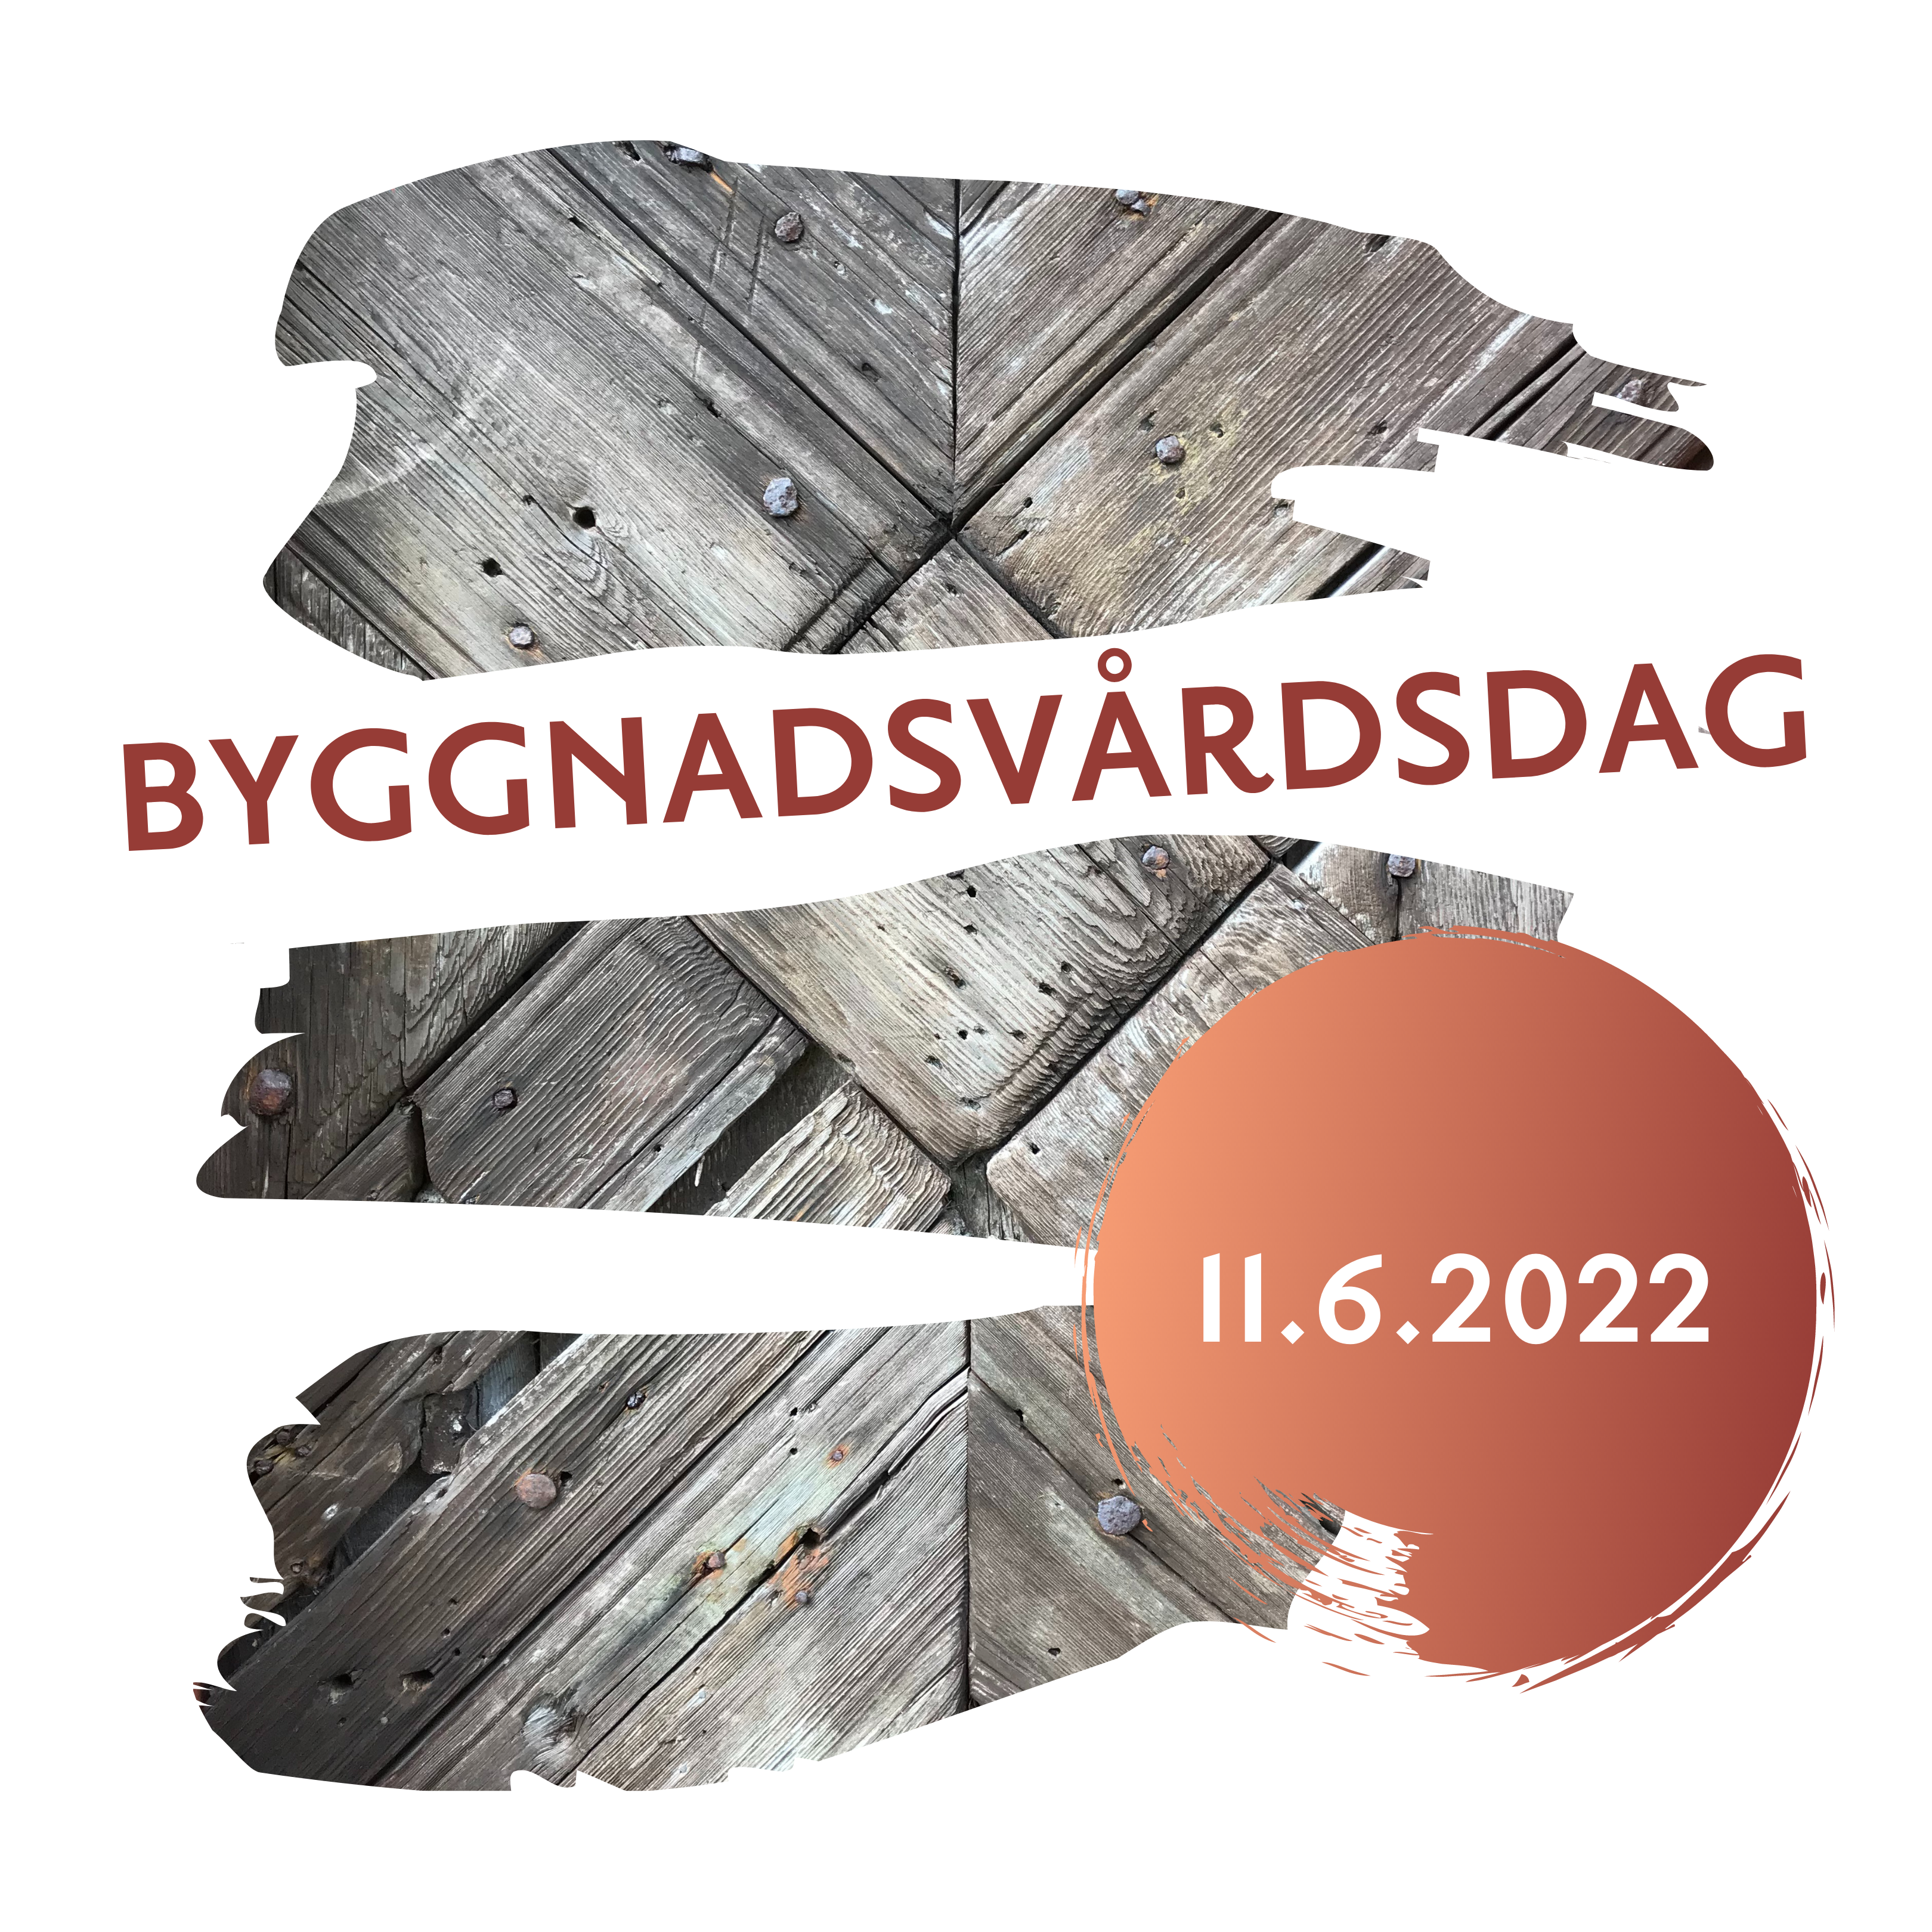 Evenemangsbild för Byggnadsvårdsdagen på Forngården 11.6.2022